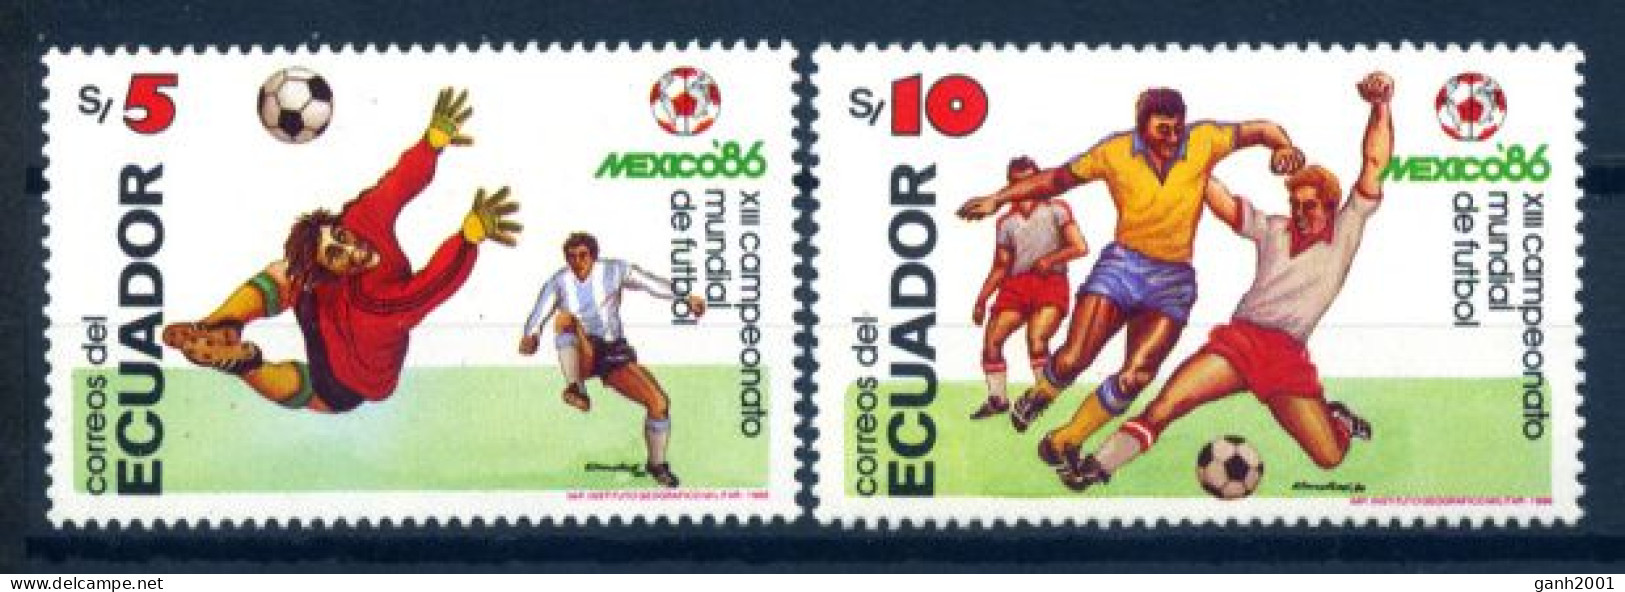 Ecuador 1986 / Football Soccer FIFA World Cup Mexico MNH Fútbol Copa Mundial / Hf04  32-2 - 1986 – Mexique